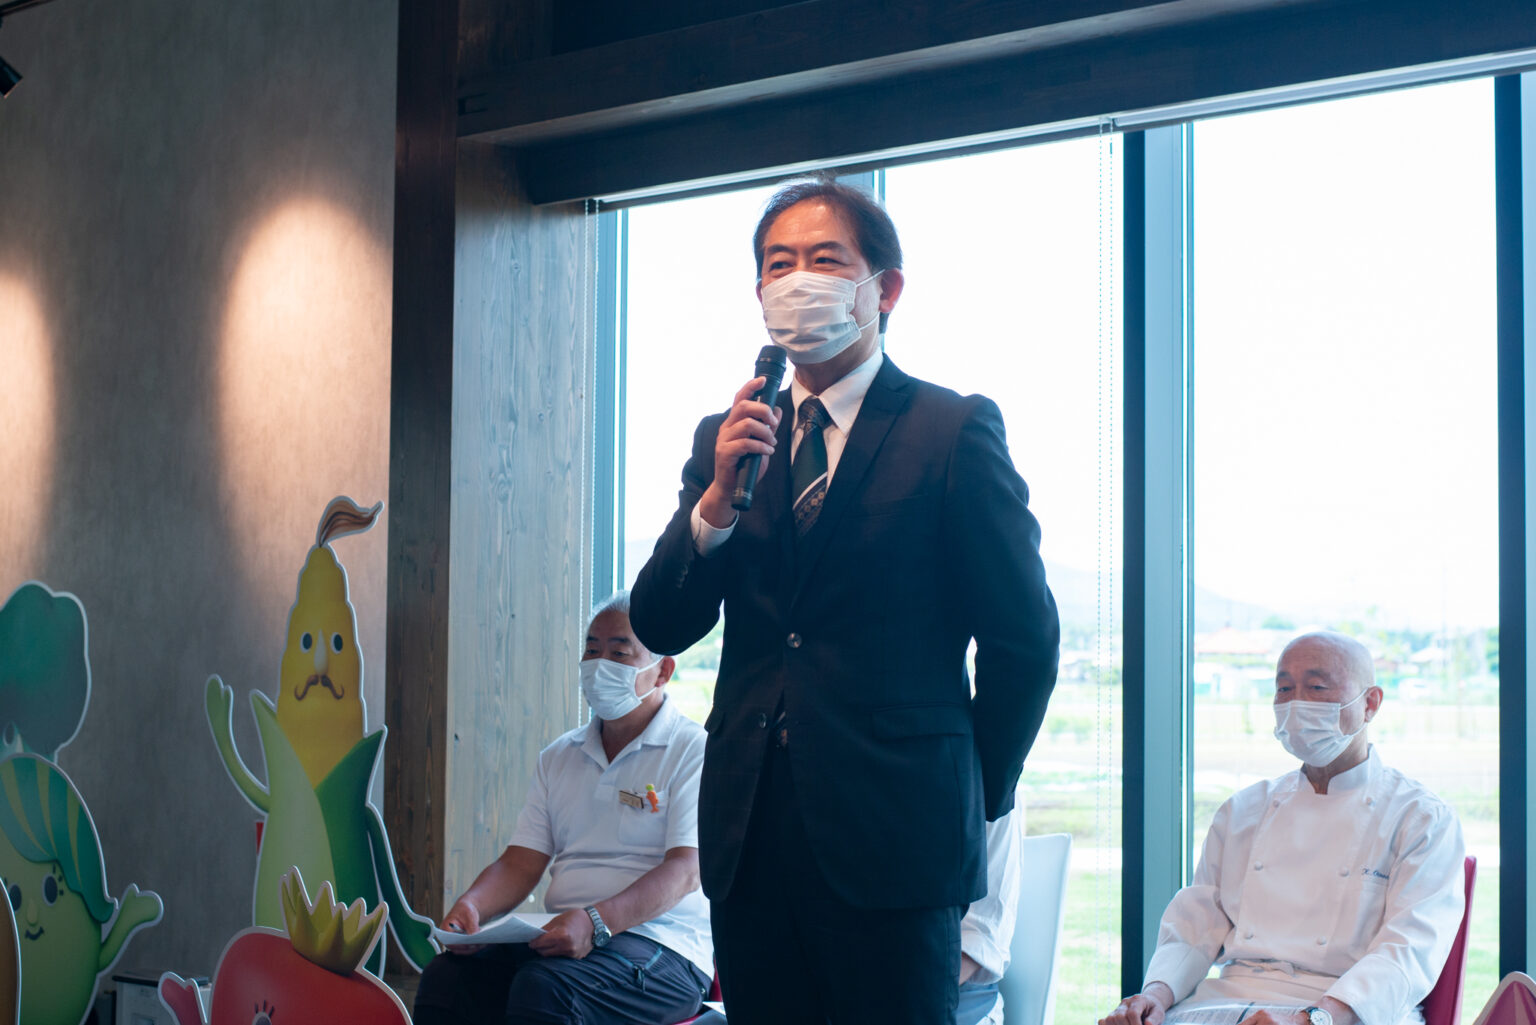 〈キユーピー〉執行役員 広報担当 兼 グループ総務統括であり、「深谷テラスプロジェクト」の担当でもある森 佳光さん。